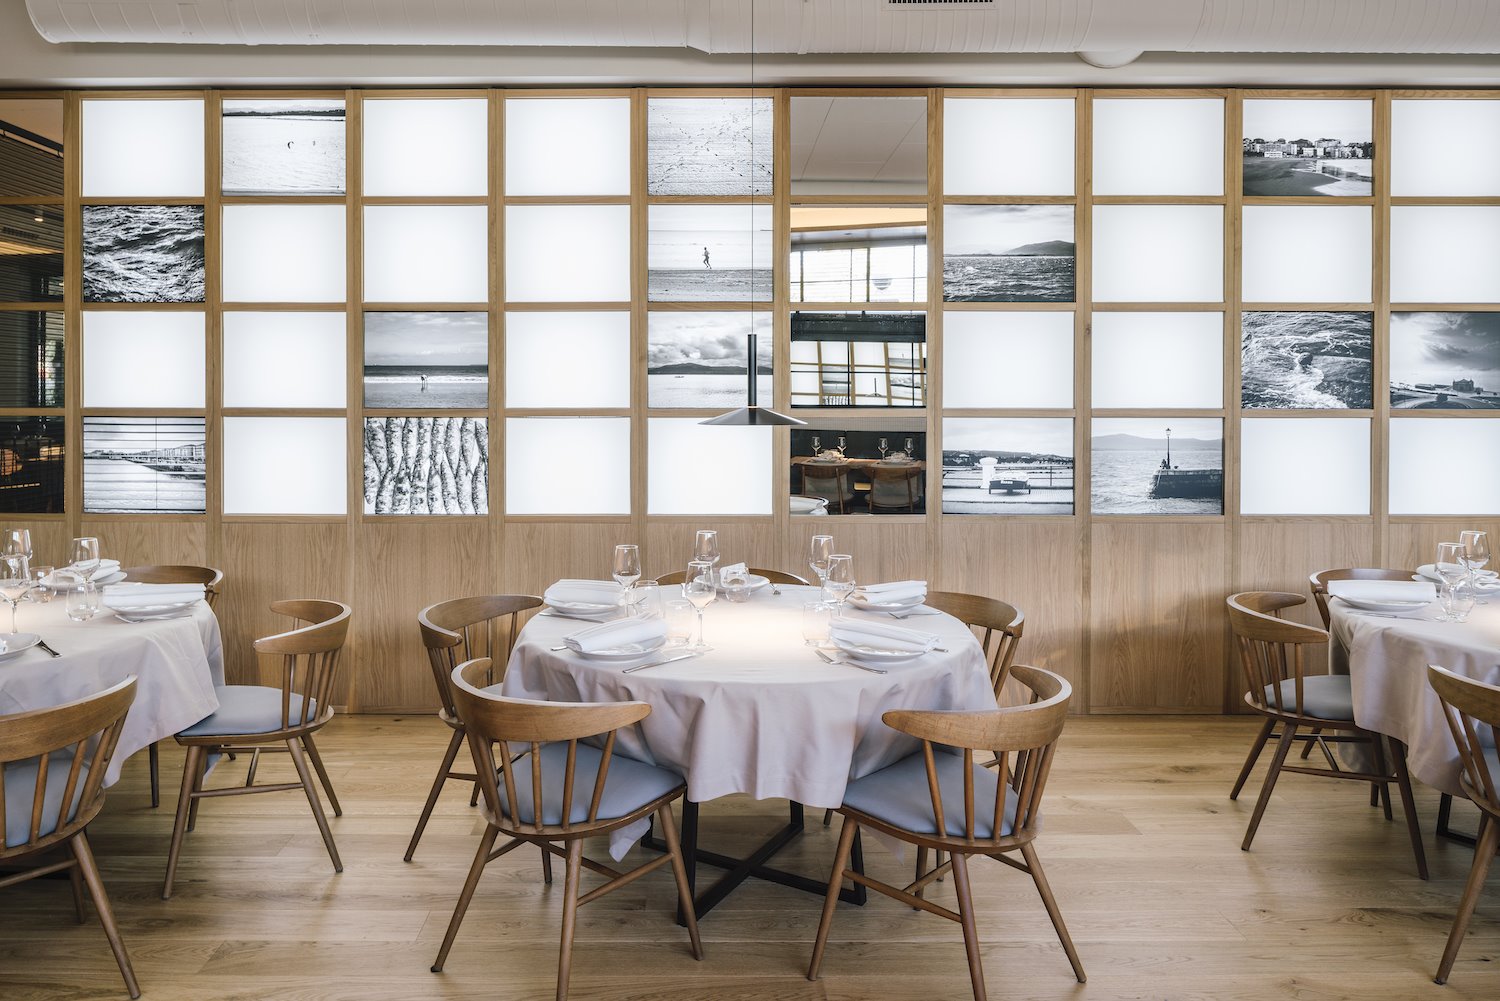 Restaurante La Maruca del estudio de arquitectura Zooco espacio con fotos y mesas redondas